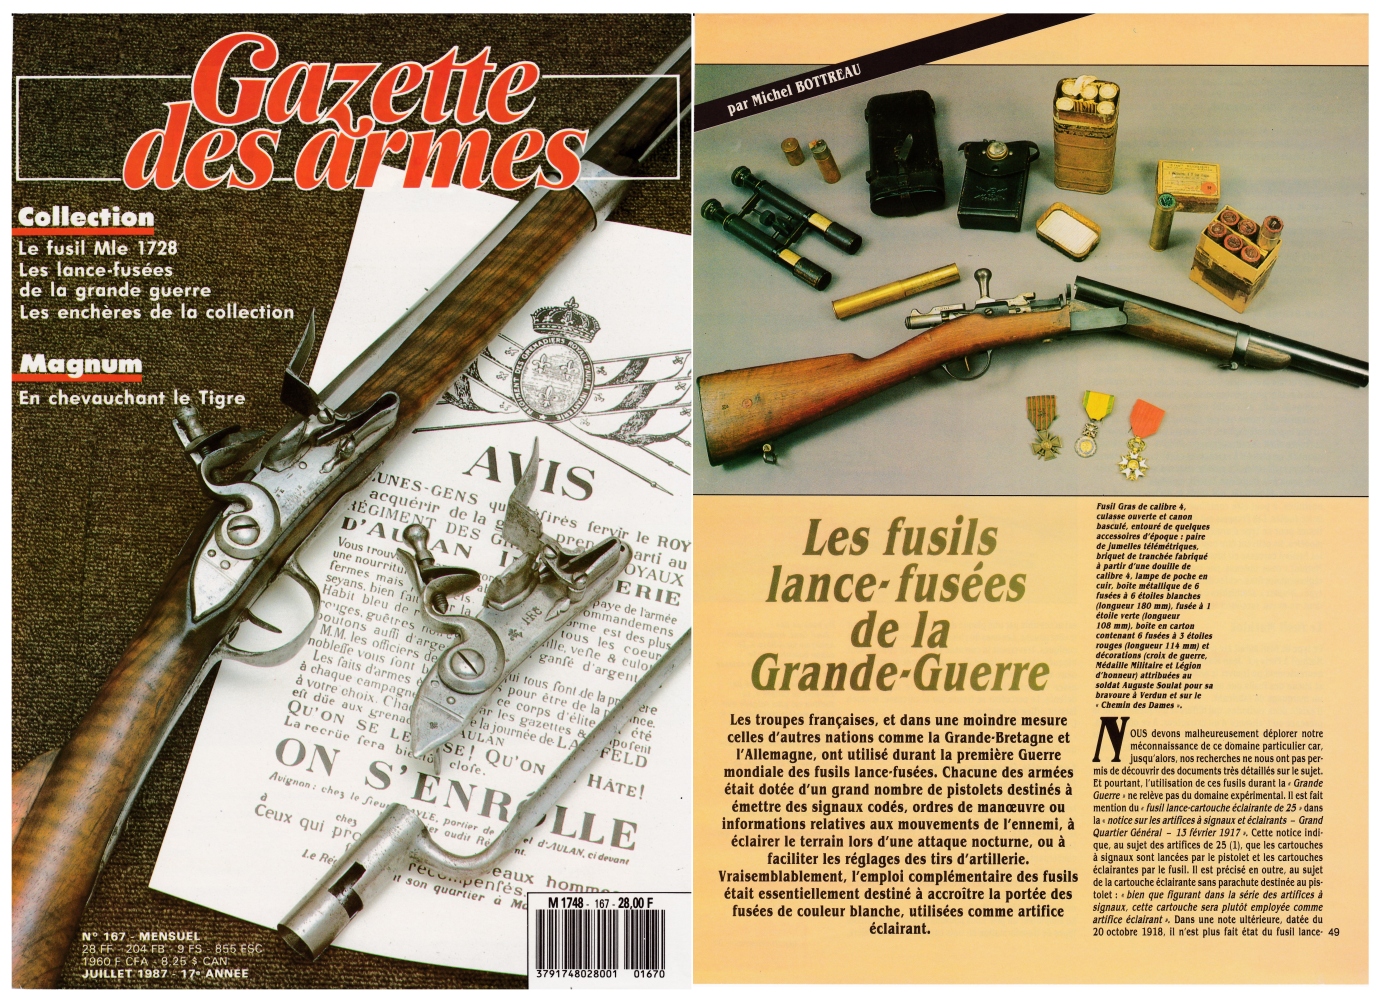 Les fusils lance-fusées de la Première Guerre mondiale ont fait l'objet d'une publication sur 6 pages dans le magazine Gazette des Armes n°167 (juillet 1987).